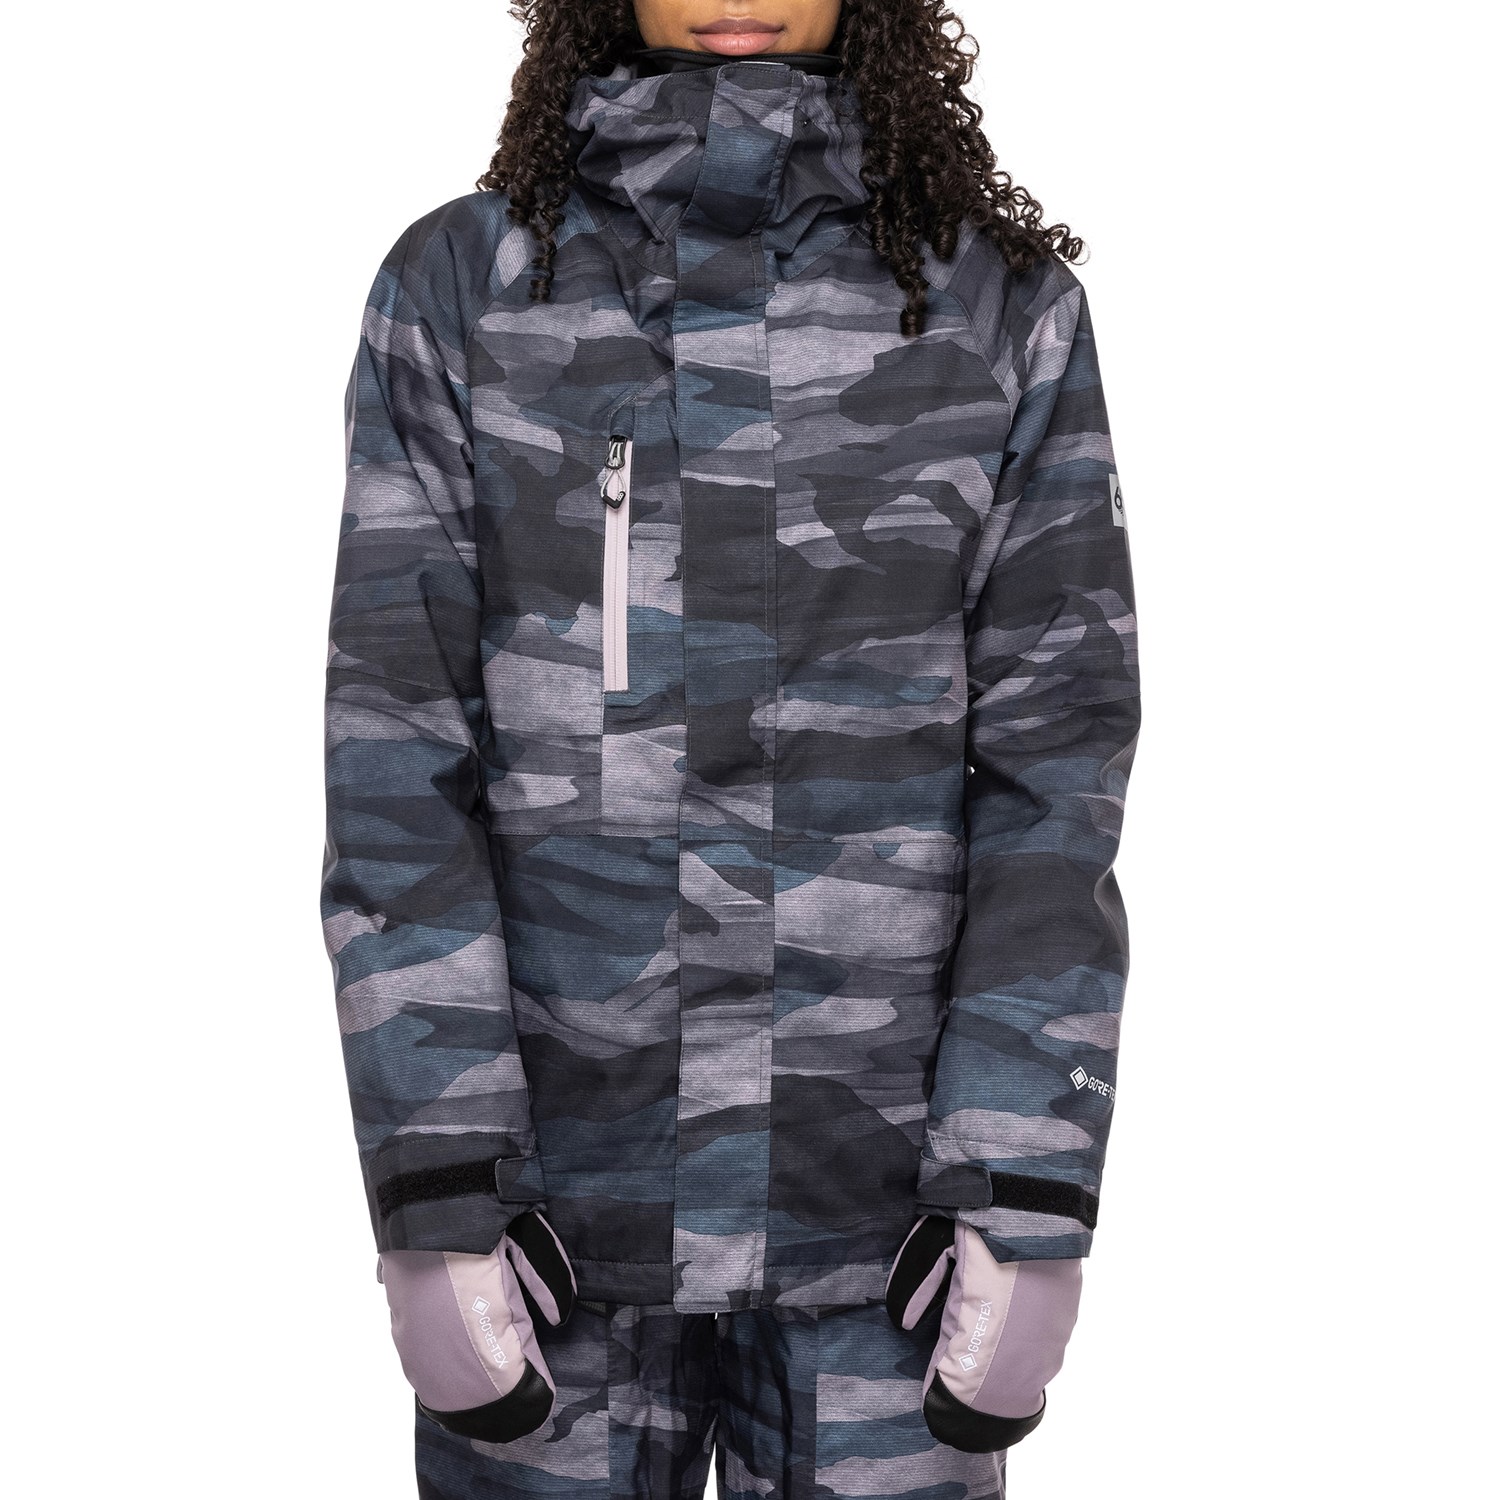 Куртка 686 Goretex Willow утепленная, черный / серый куртка утепленная мужская termit серый